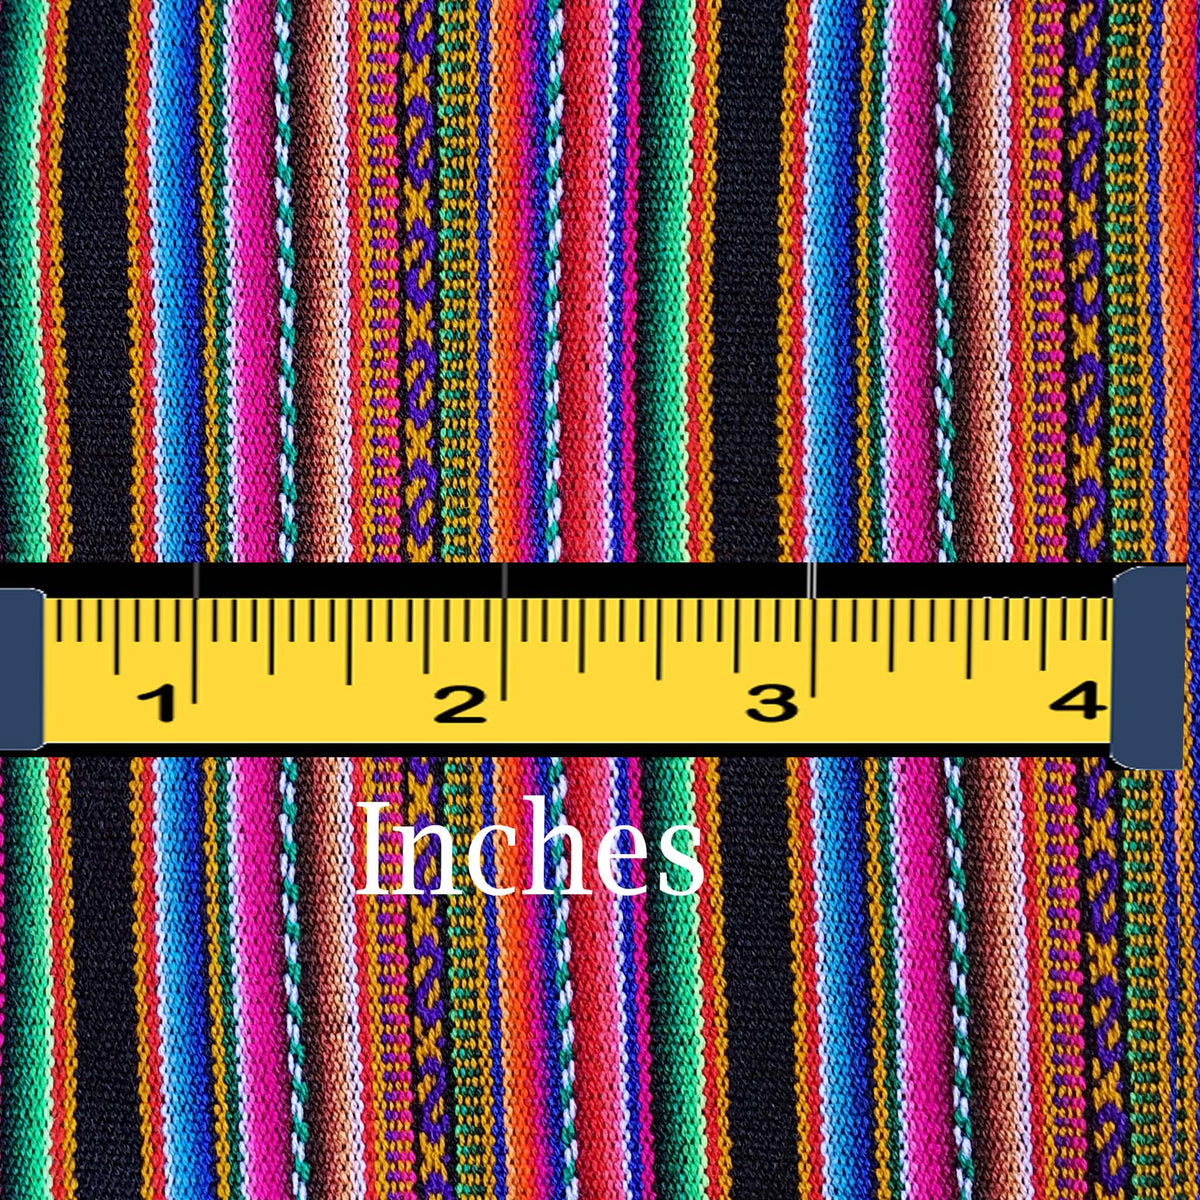 aguayo, fabric by yard, andean fabrics, innate artisan shop, telas peruanas, telas andinas, por metros, California, Texas, New York, Cusco fabrics, Peruvian fabric